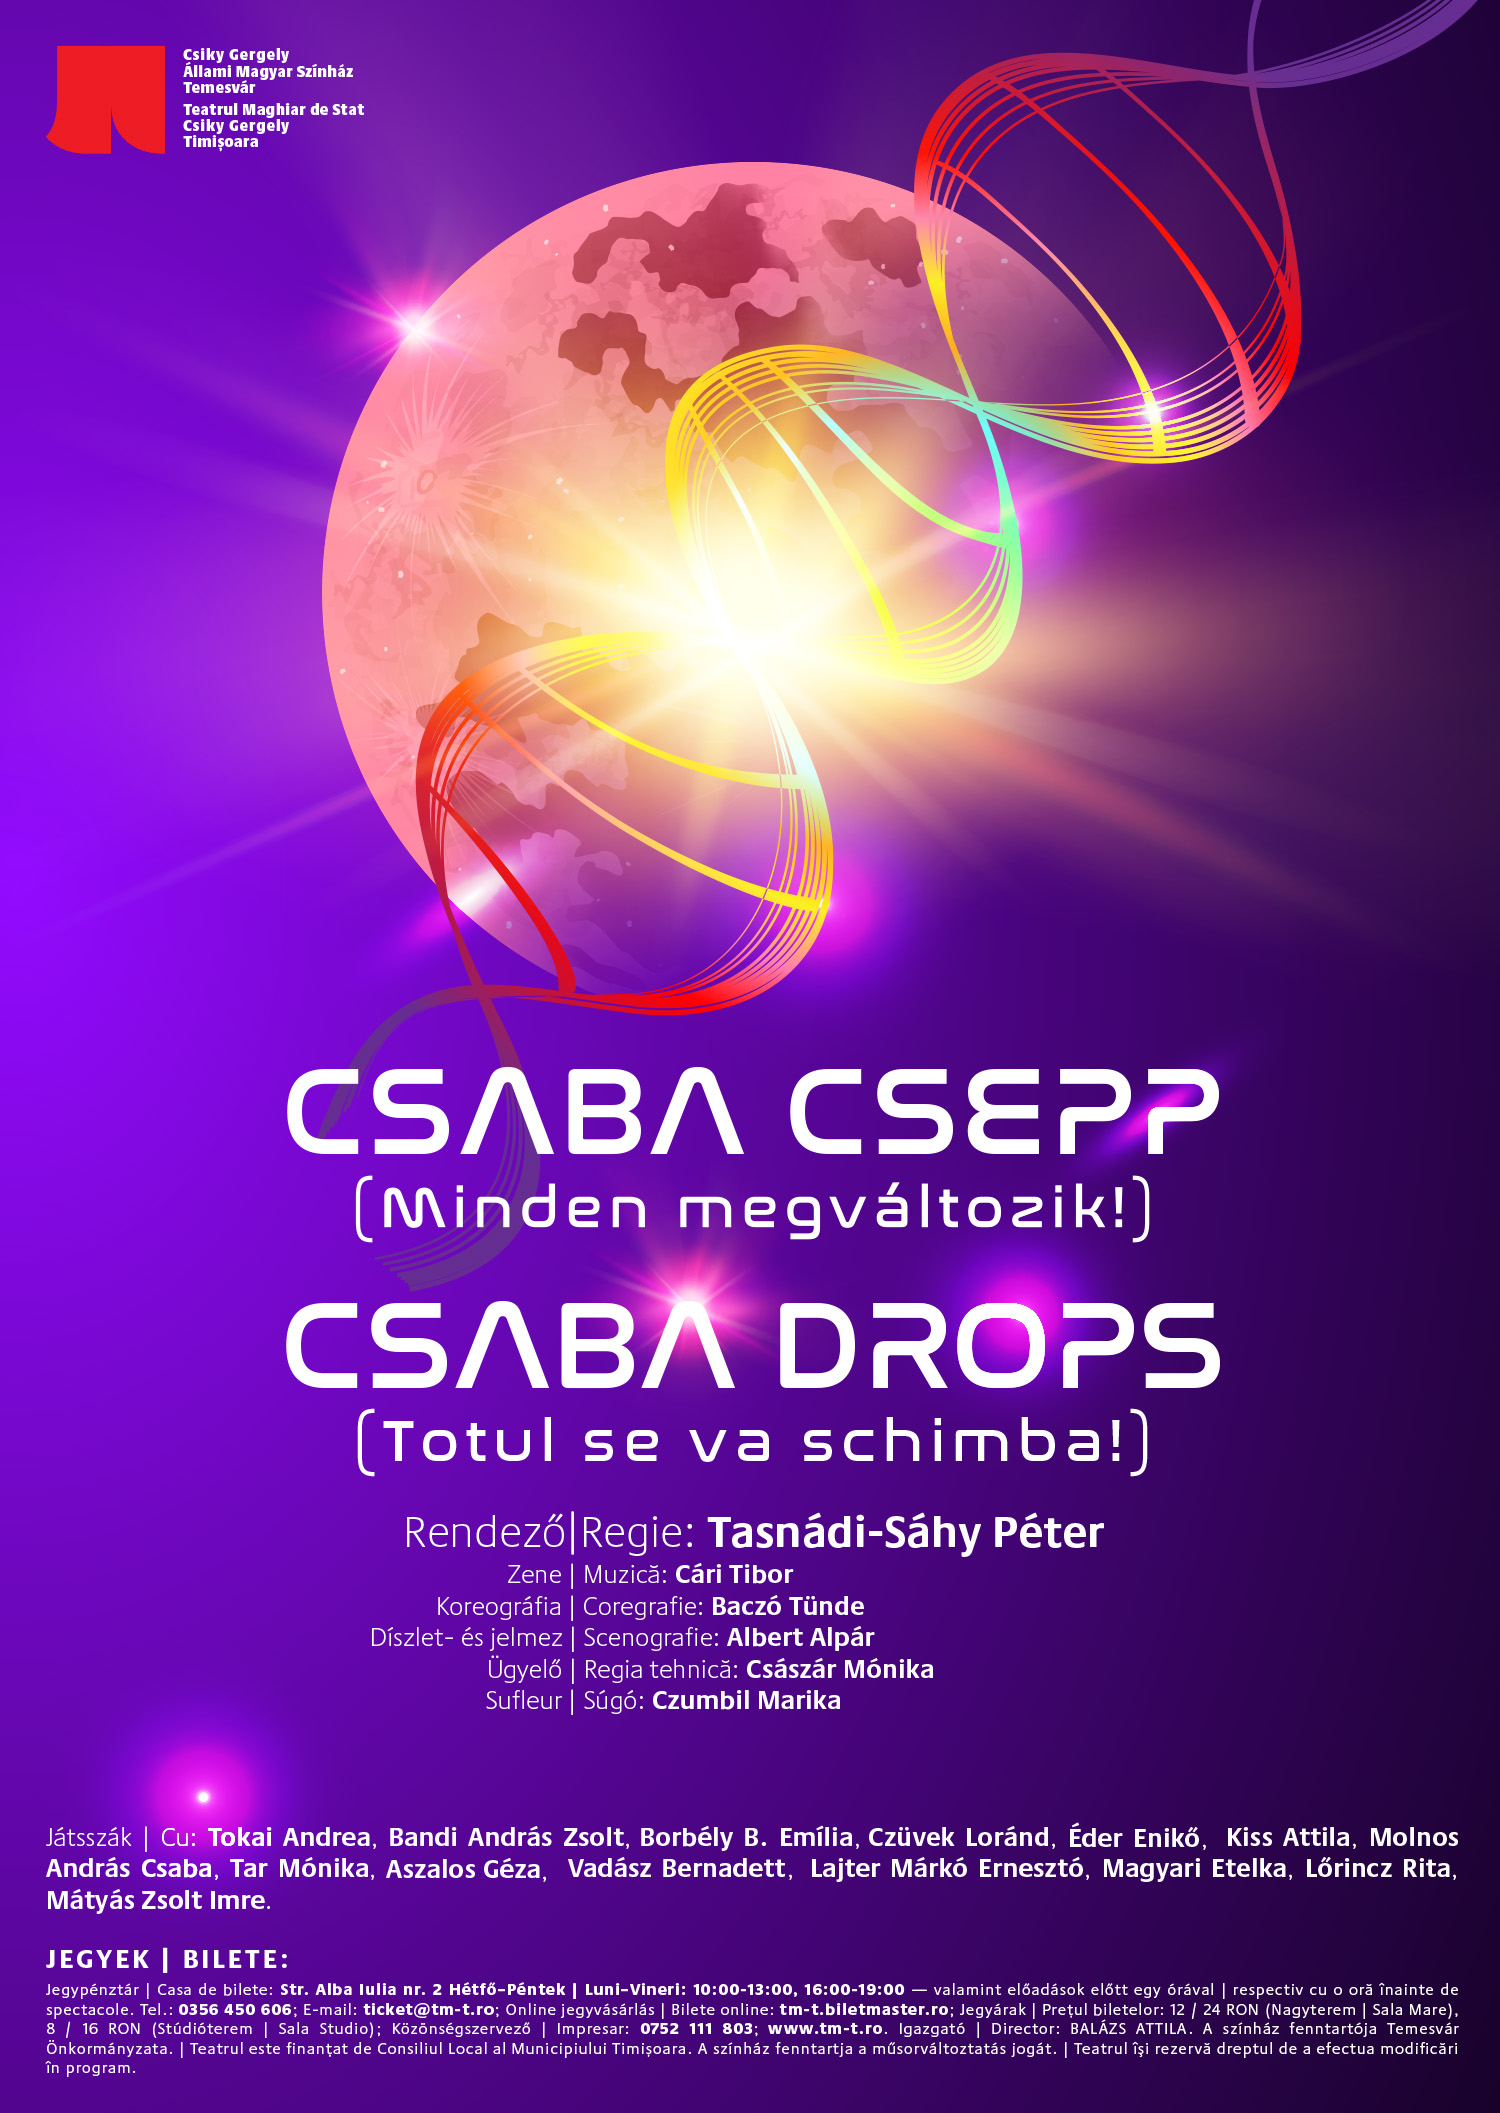 Csaba Csepp (Minden megváltozik) című előadásunk bemutatóját egy későbbi időpontban, január 27-én, este 7 órától tartjuk meg